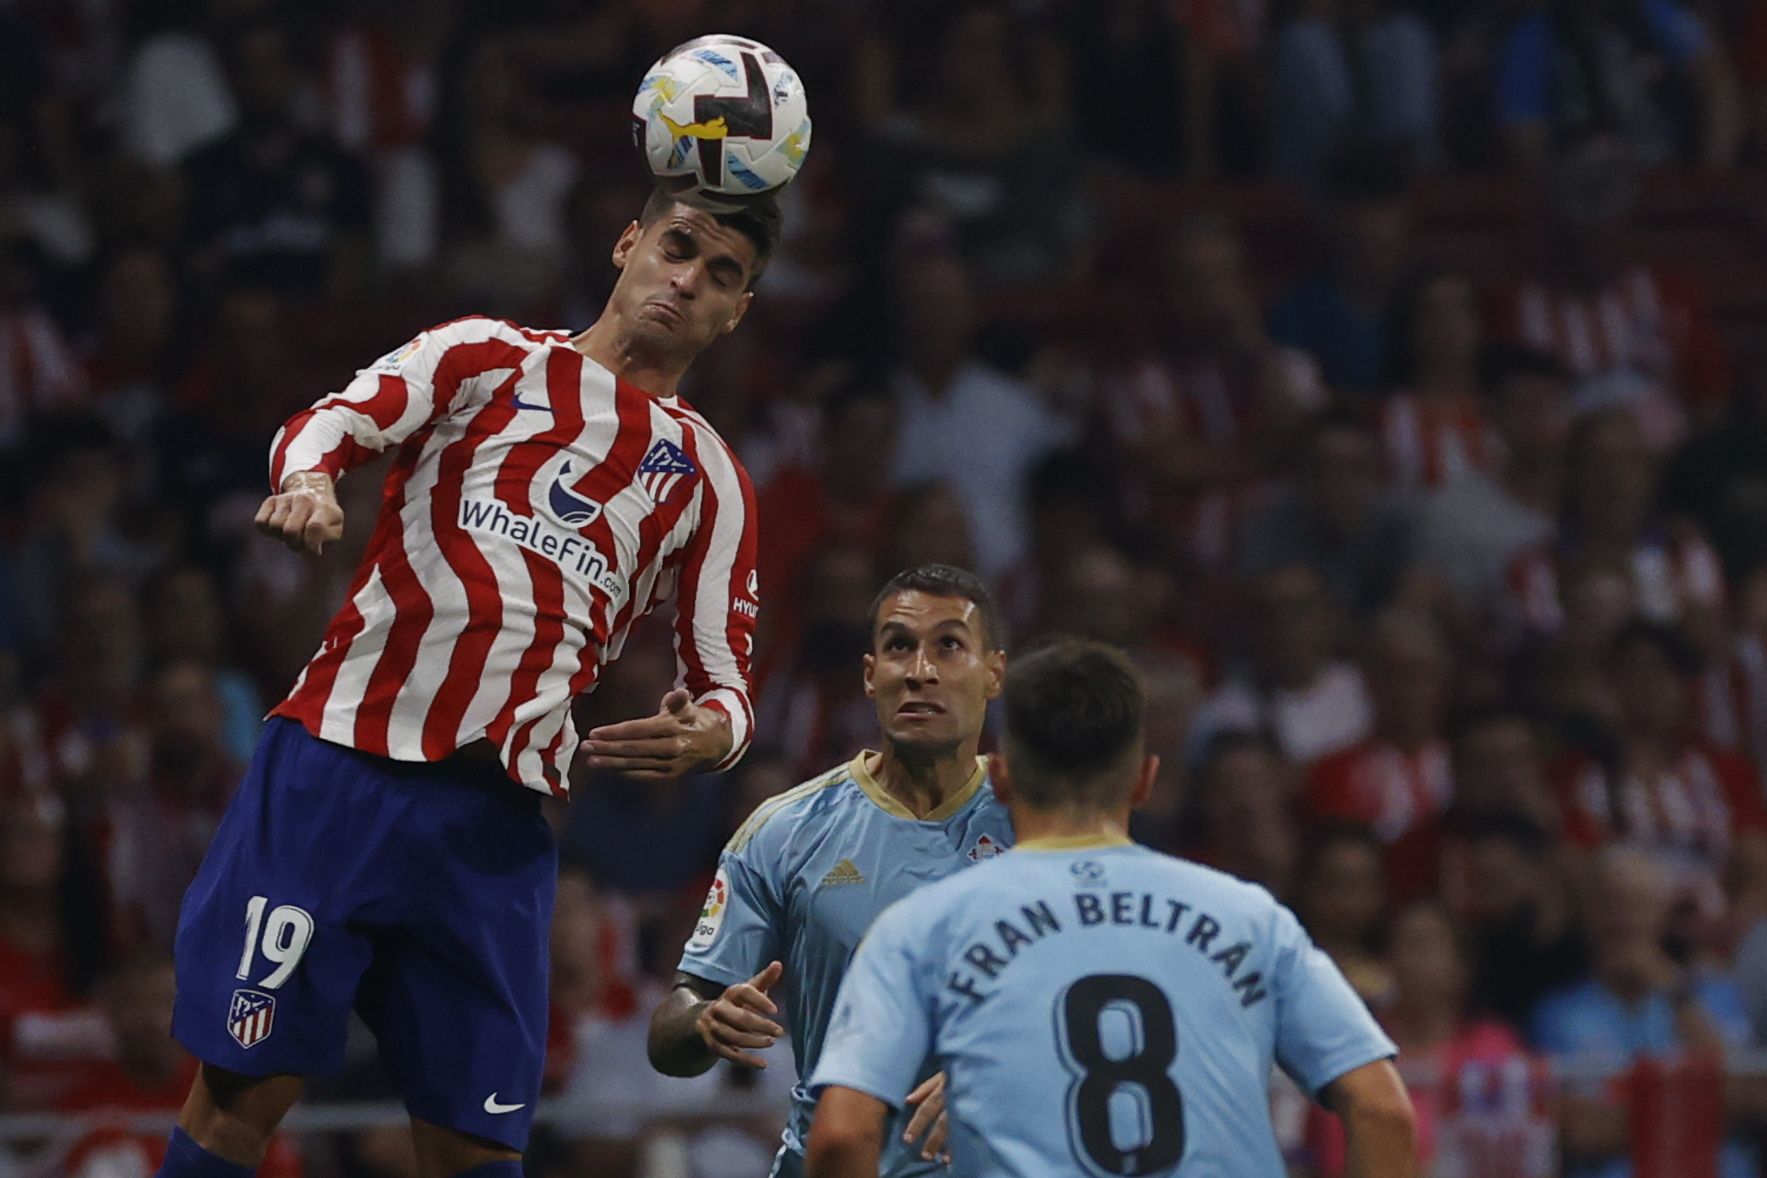 Las imágenes que resumen los mejores momentos del partido Atlético de Madrid 4-1 Celta